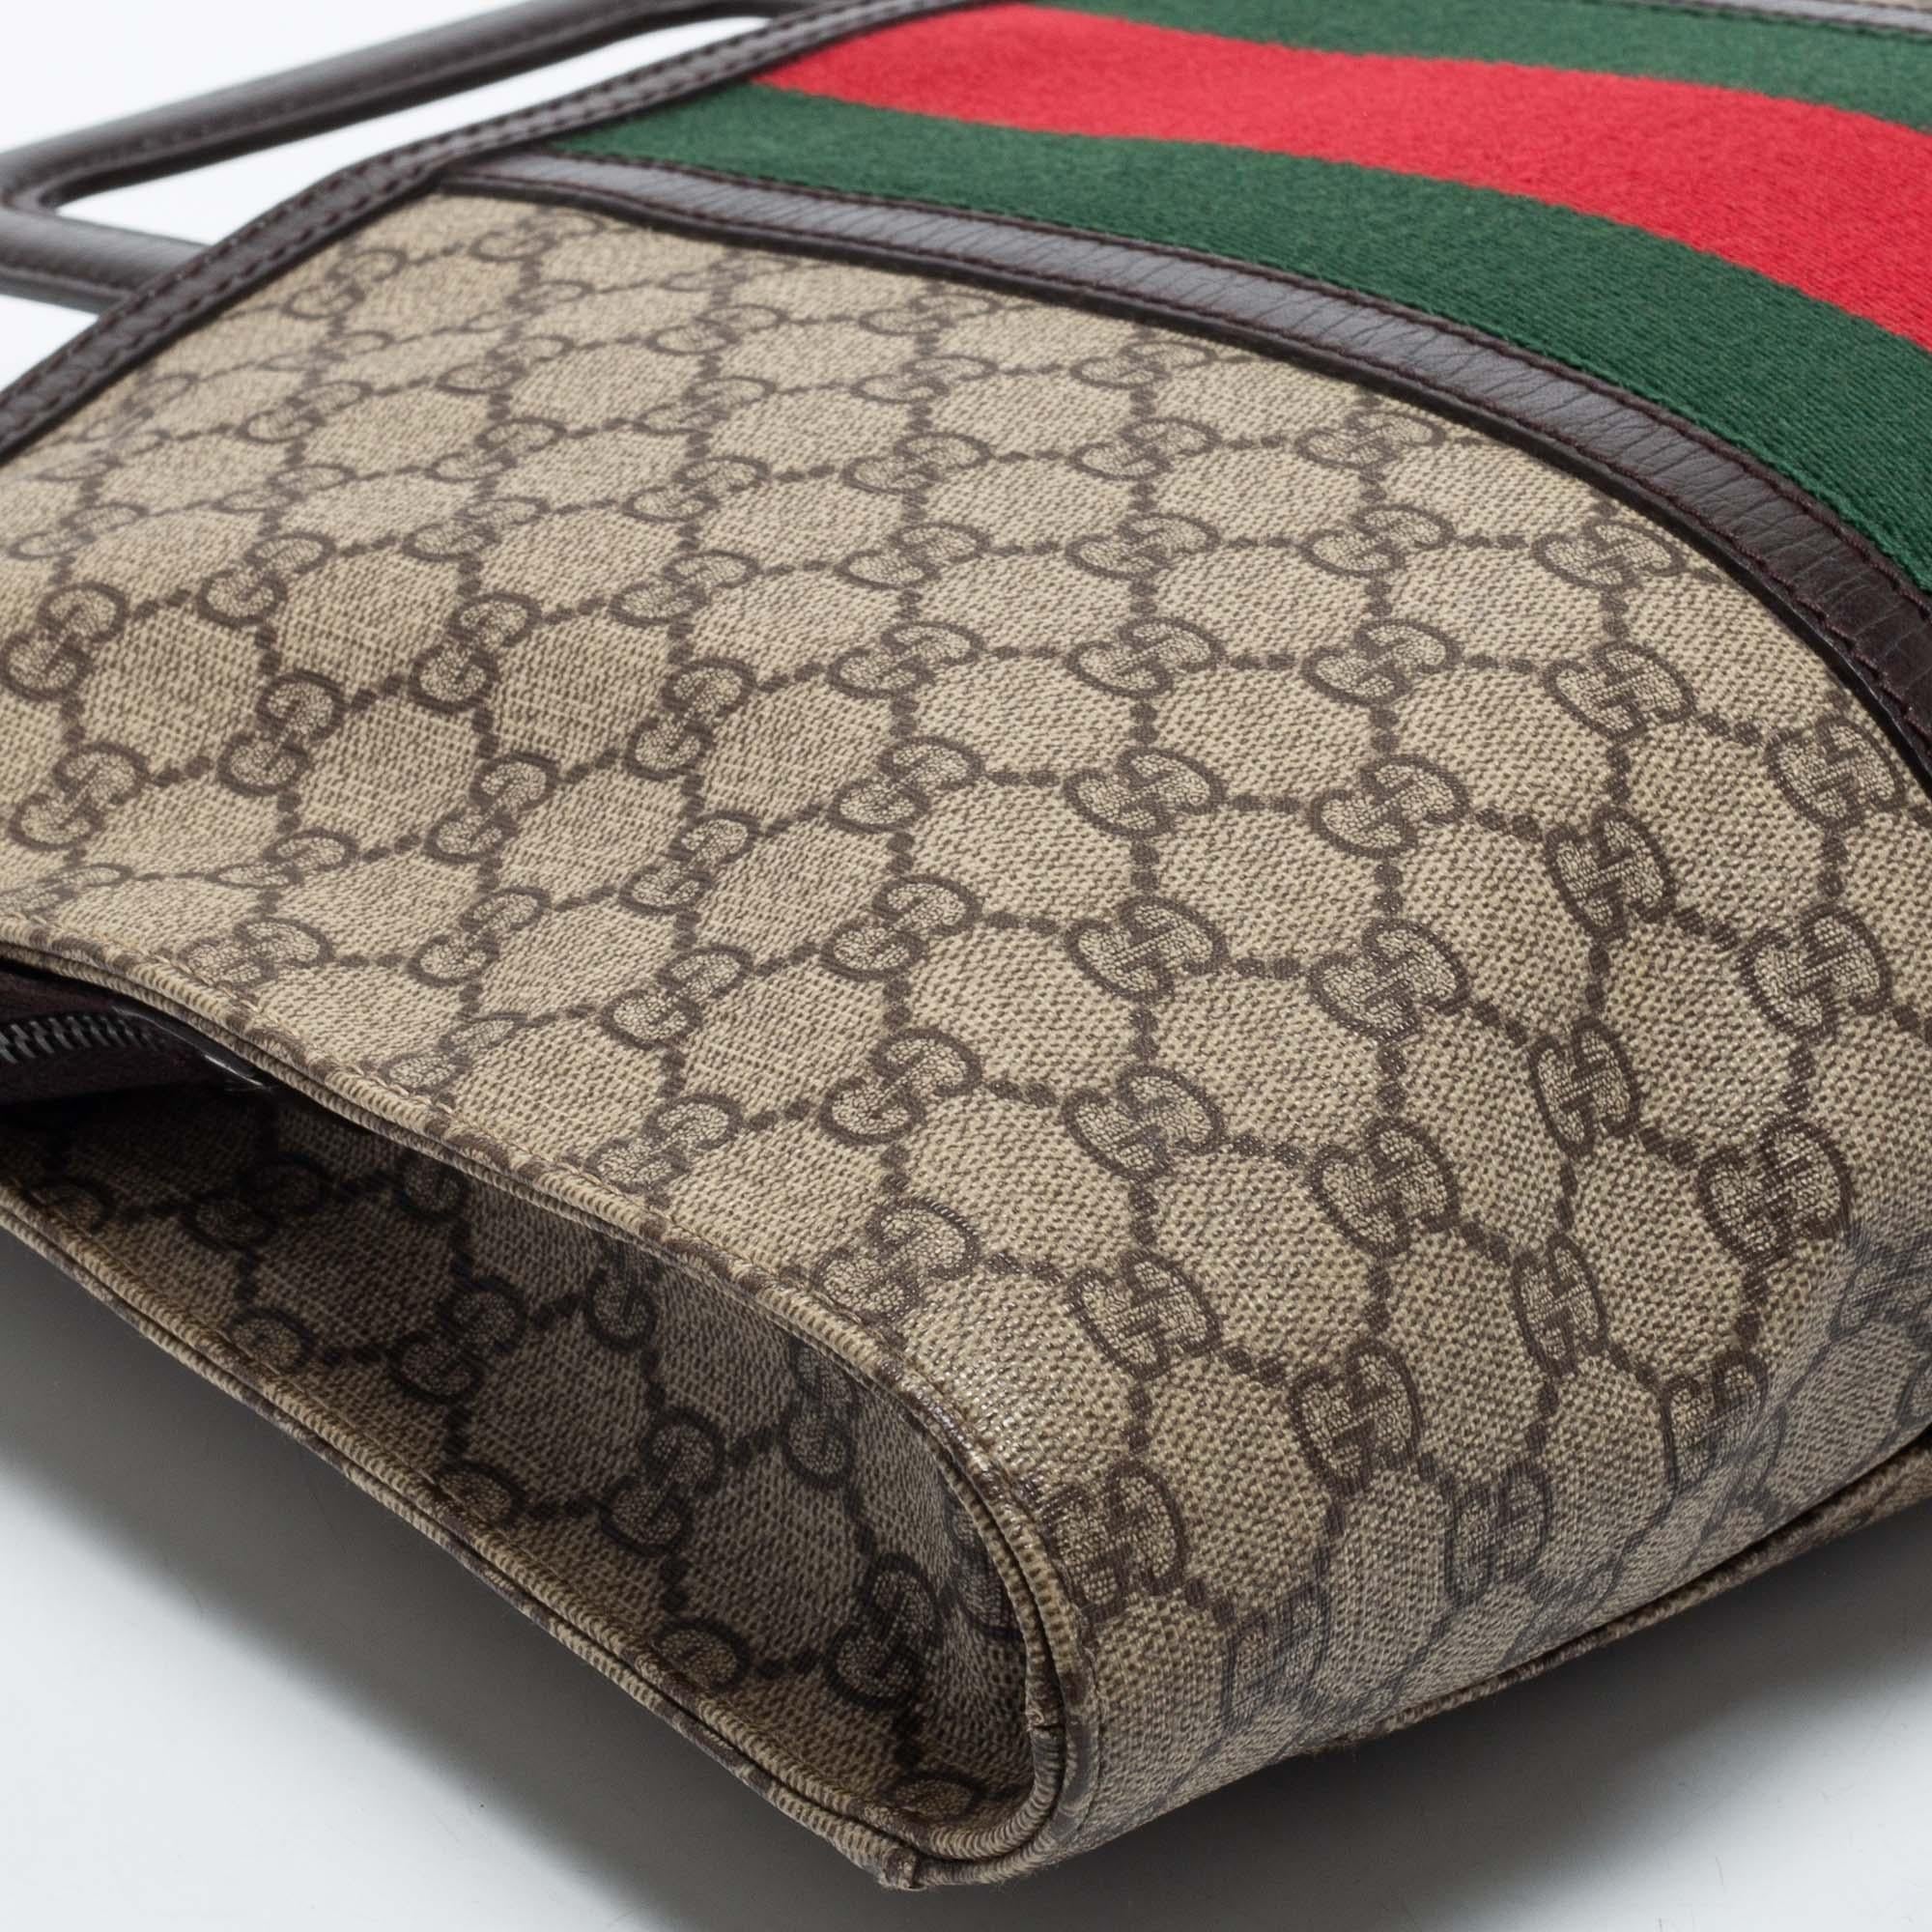 Gucci - Sac porte-documents « Supremes » en toile et cuir marron/beige avec logo GG 2